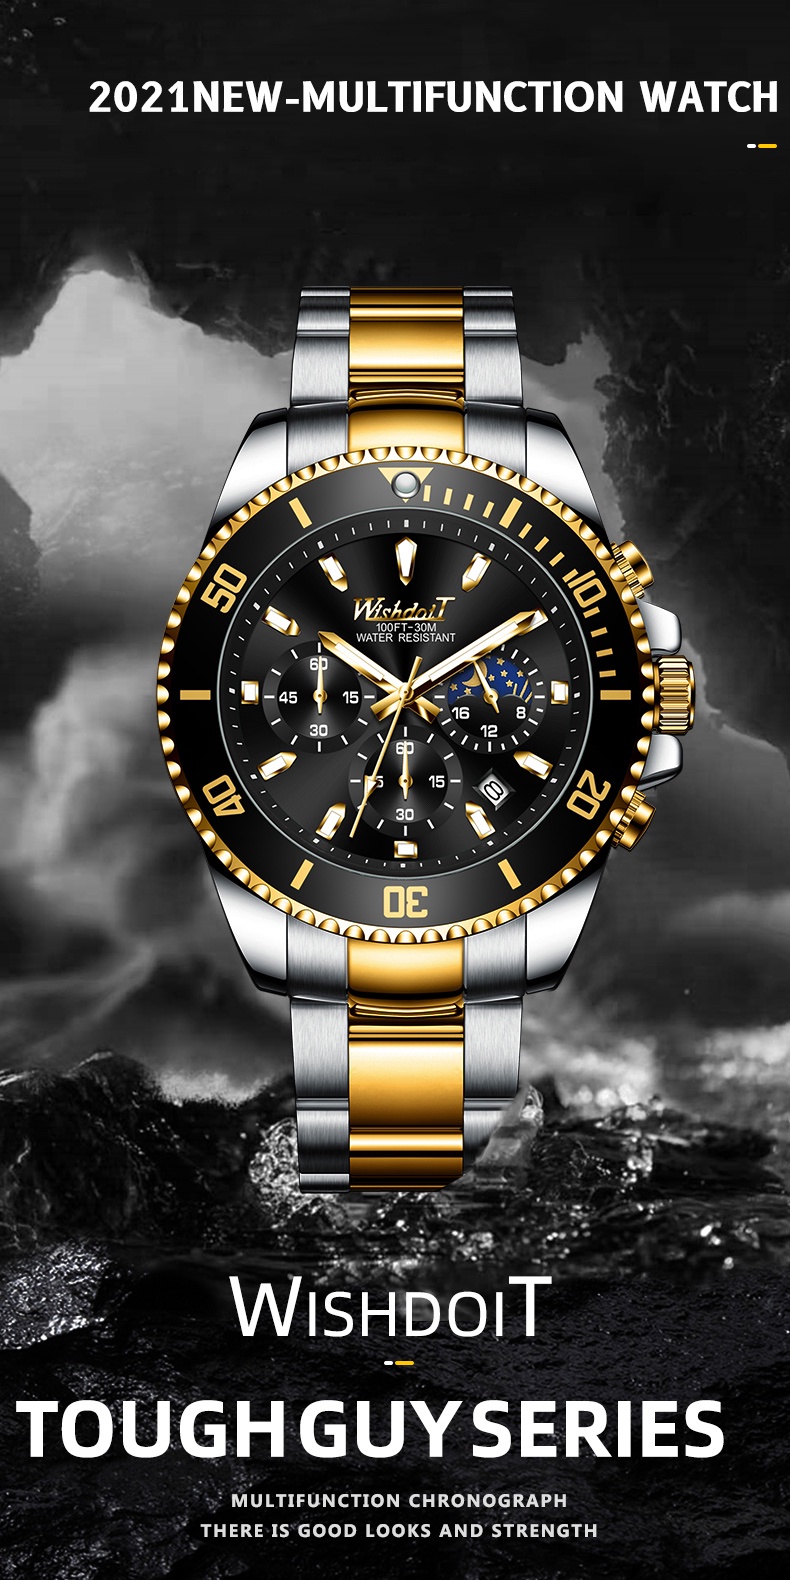 ข้อมูลประกอบของ WISHDOIT นาฬิกาข้อมือผู้ชาย นาฬิกาควอตซ์ สายสเตนเลส สไตล์สปอร์ต สีดำ หน้าปัดเรืองแสง